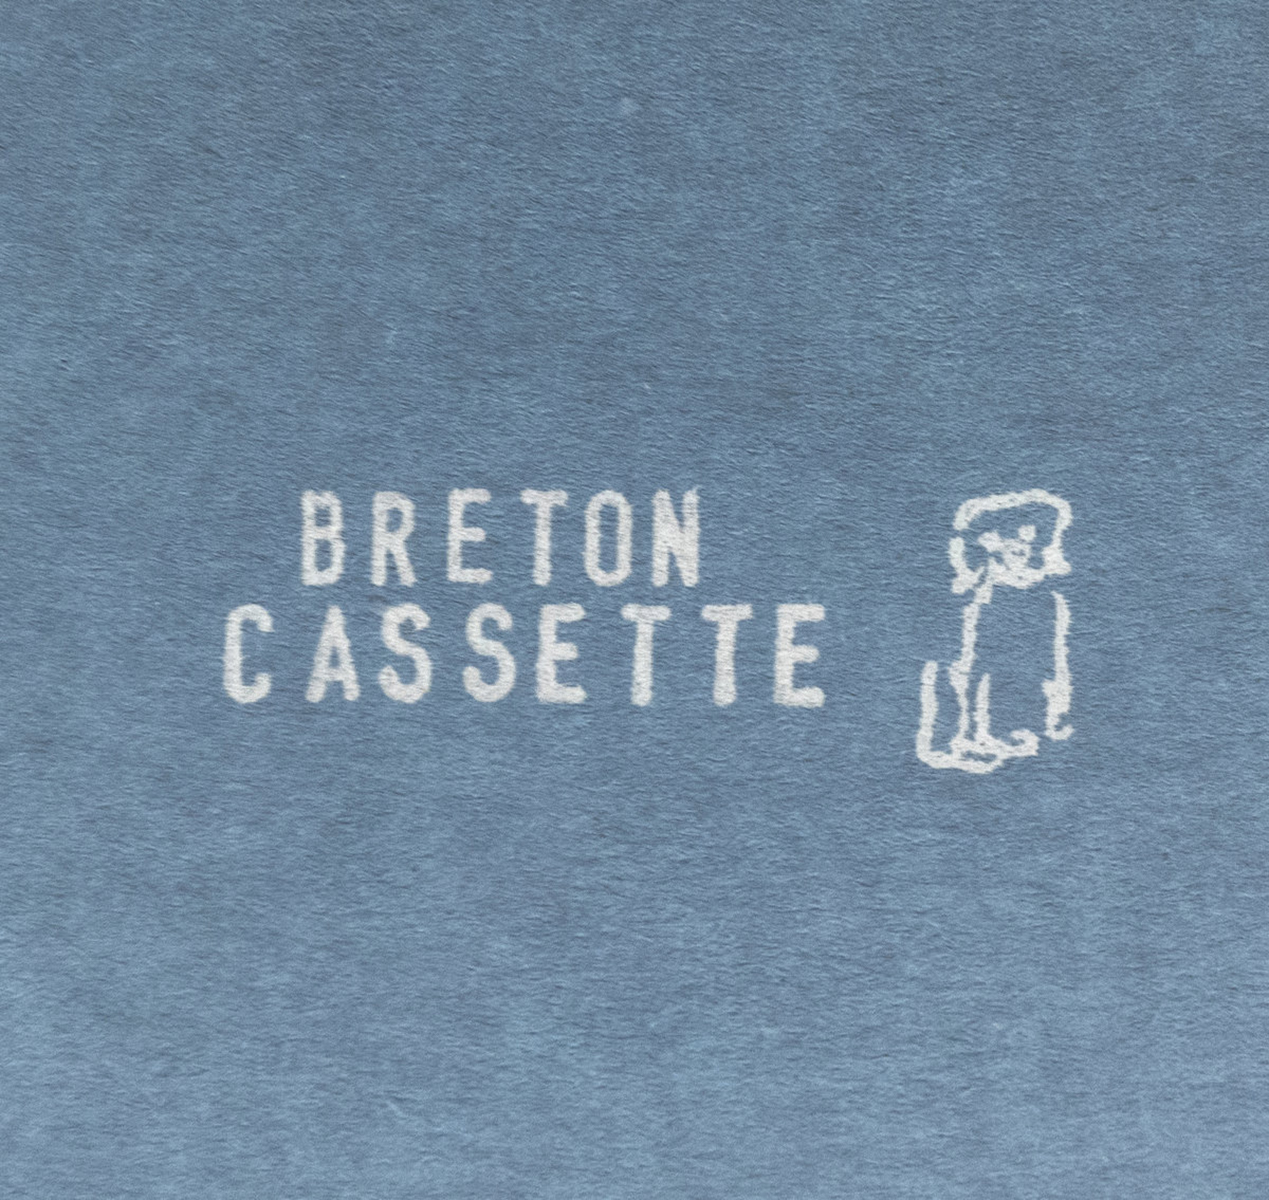 Breton Cassette